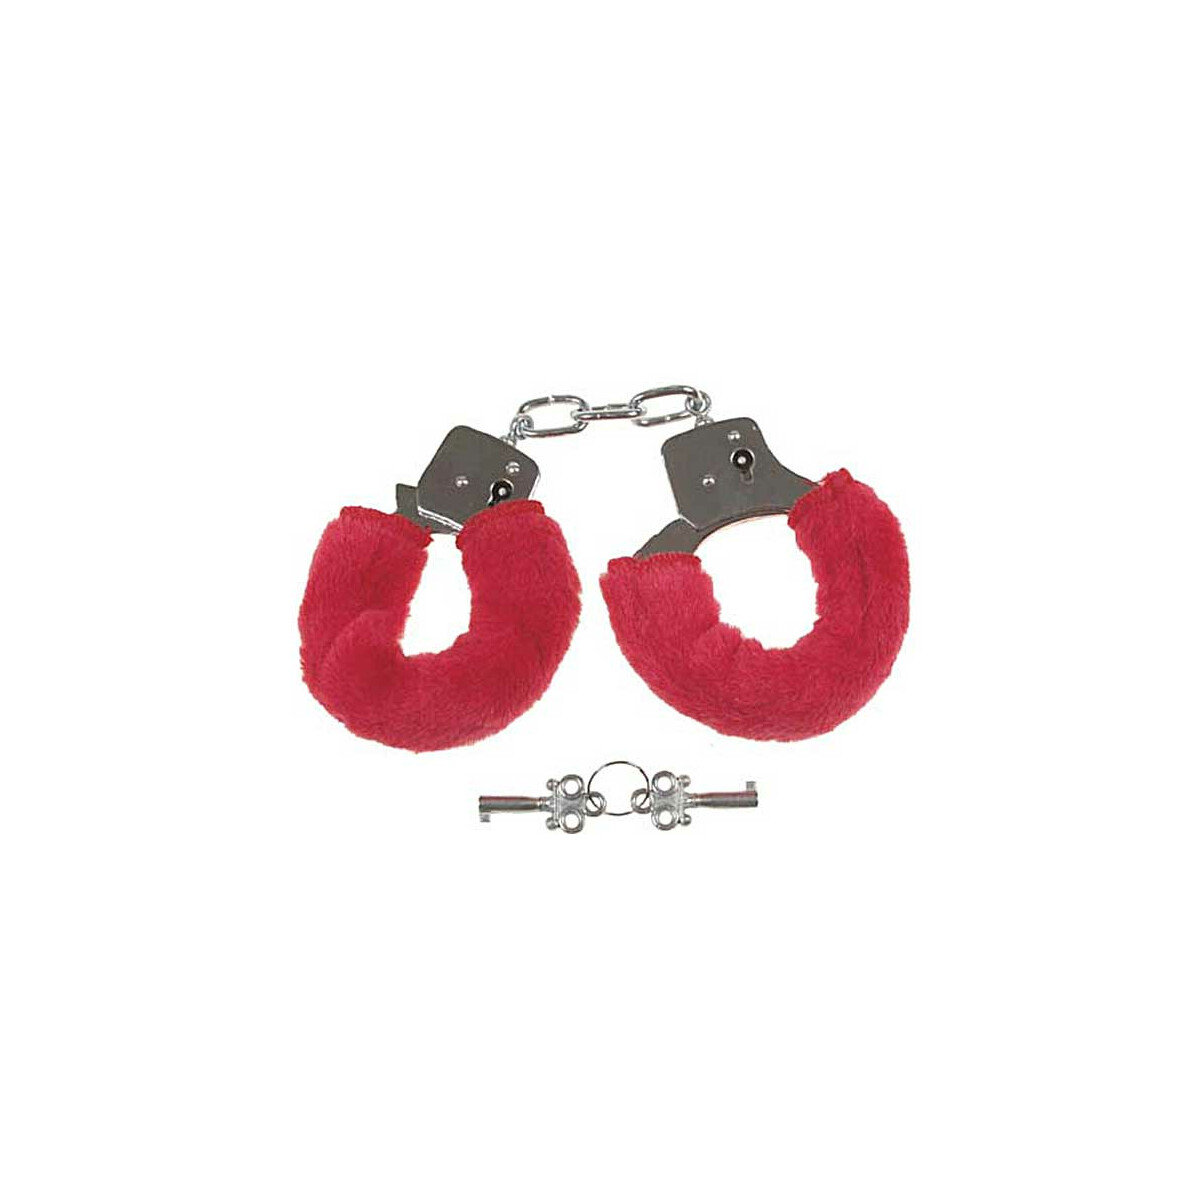  Handschellen, mit 2 Schlüssel, chrom mit Fellüberzug in rot